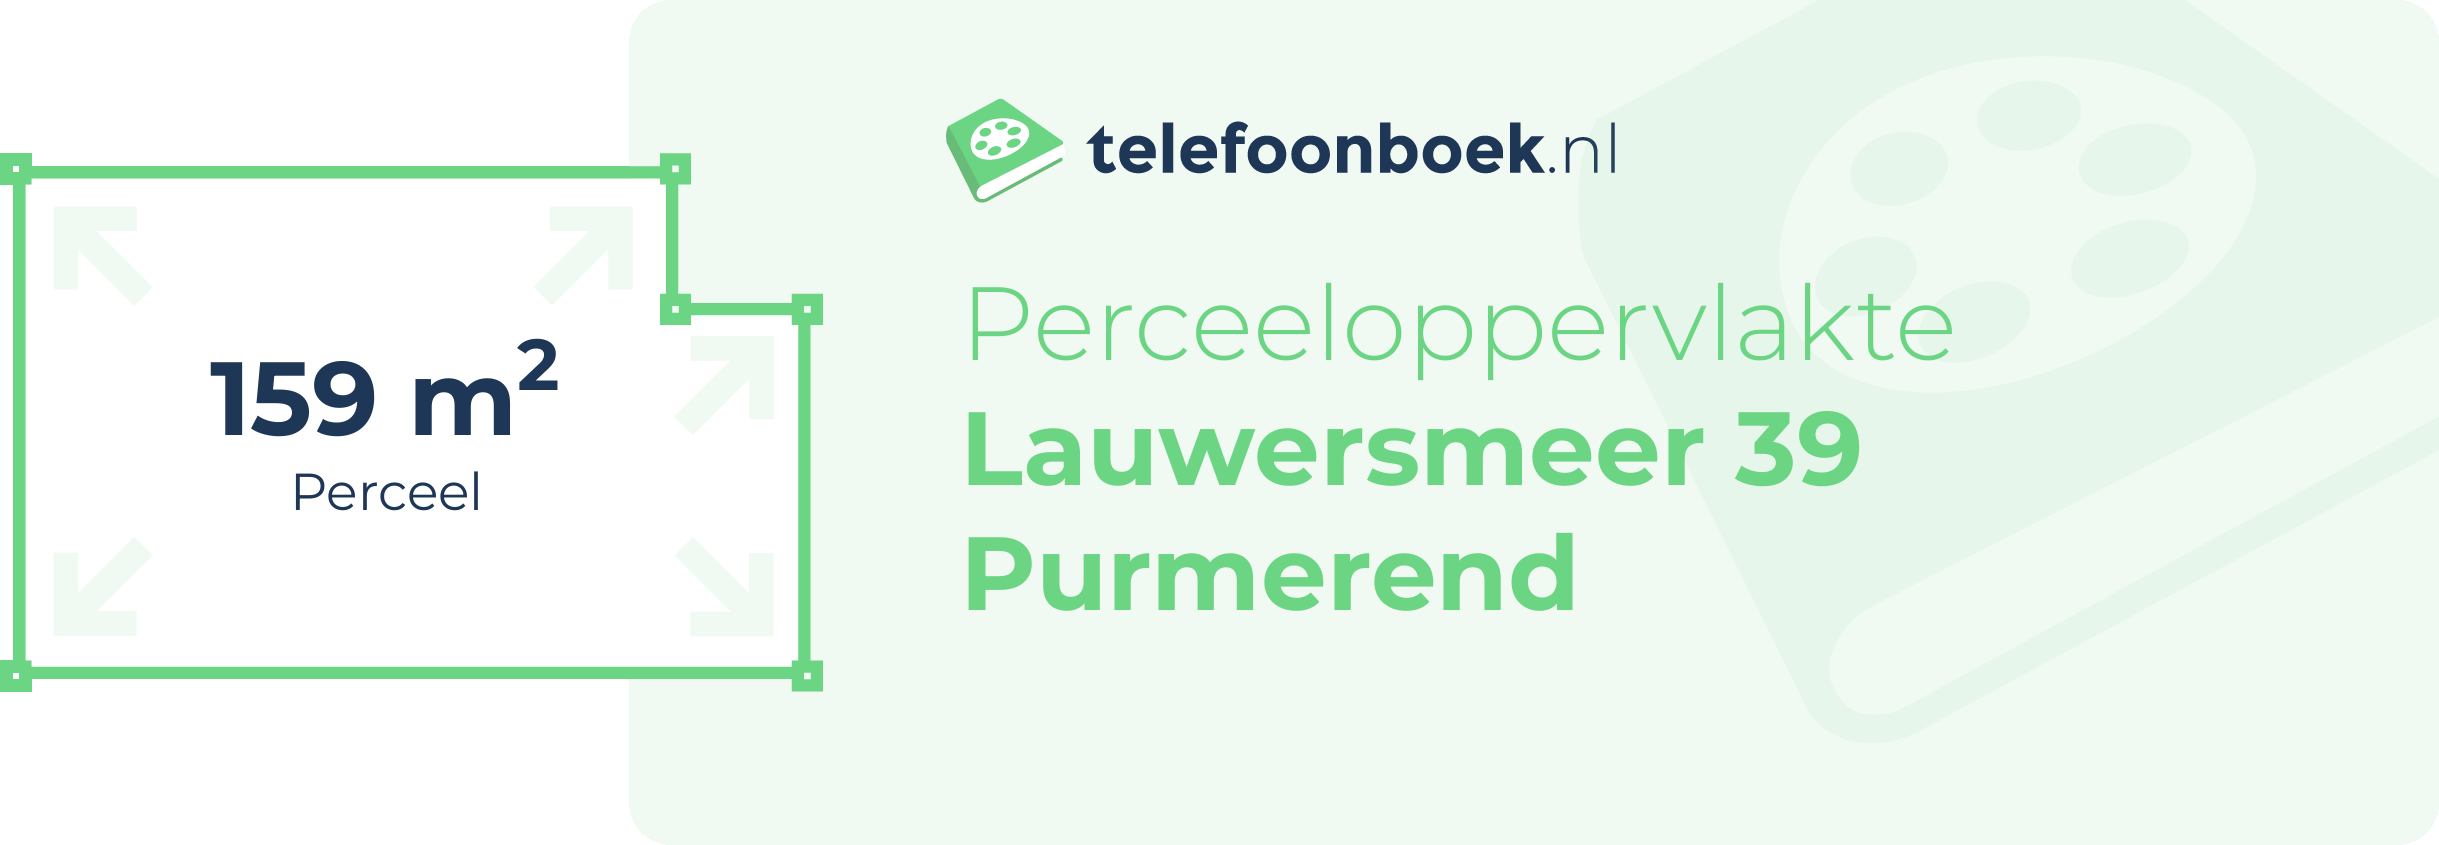 Perceeloppervlakte Lauwersmeer 39 Purmerend